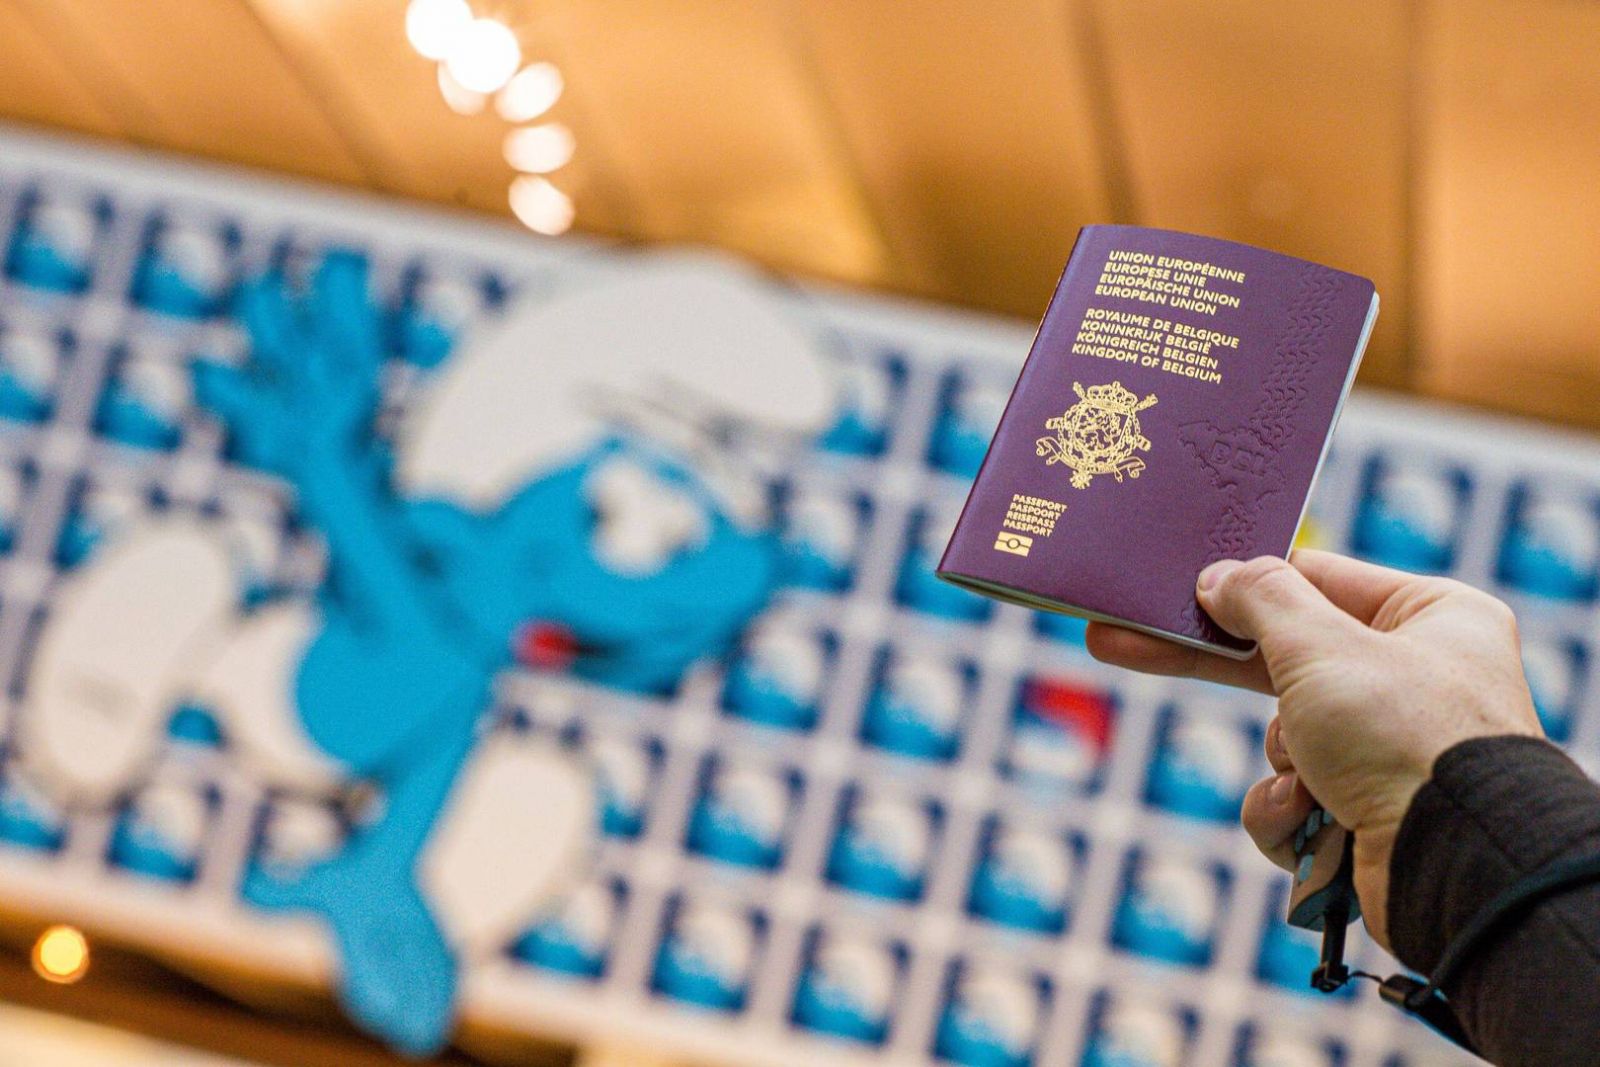 Бельгійські паспорти з малюнками із коміксів. Фото: BELGA